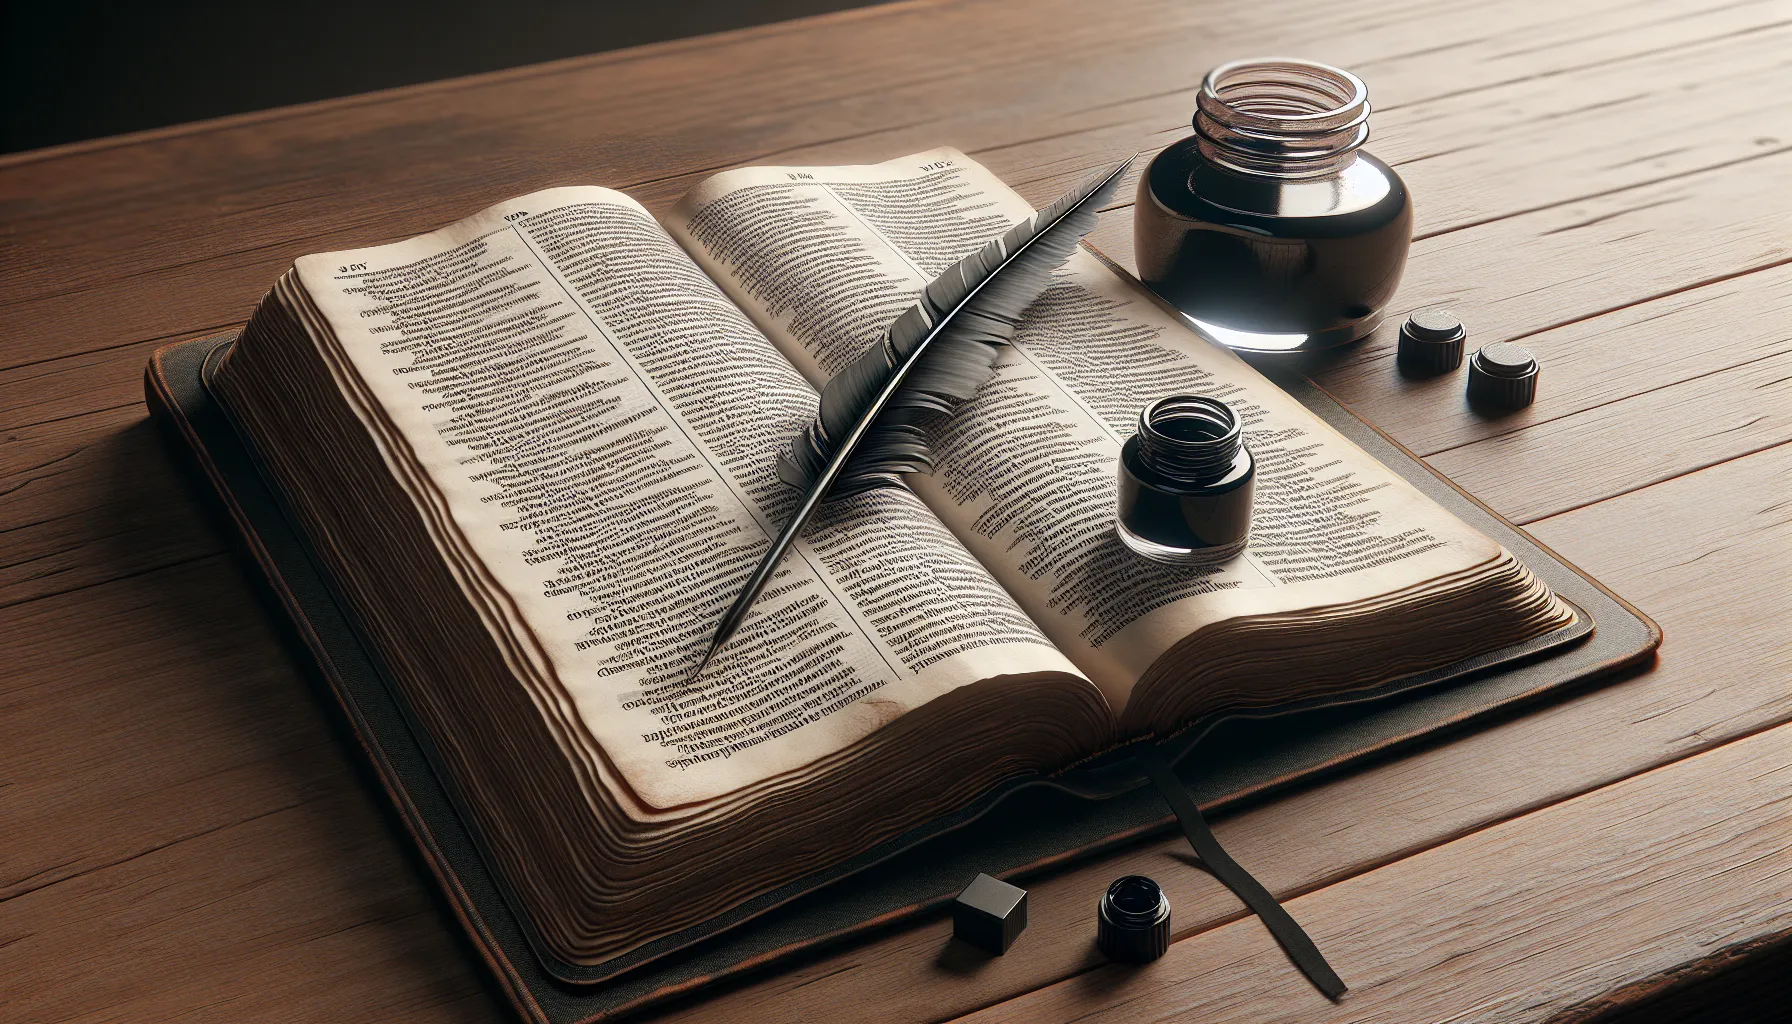 Imagen ilustrativa de una Biblia abierta con pluma y tintero al lado